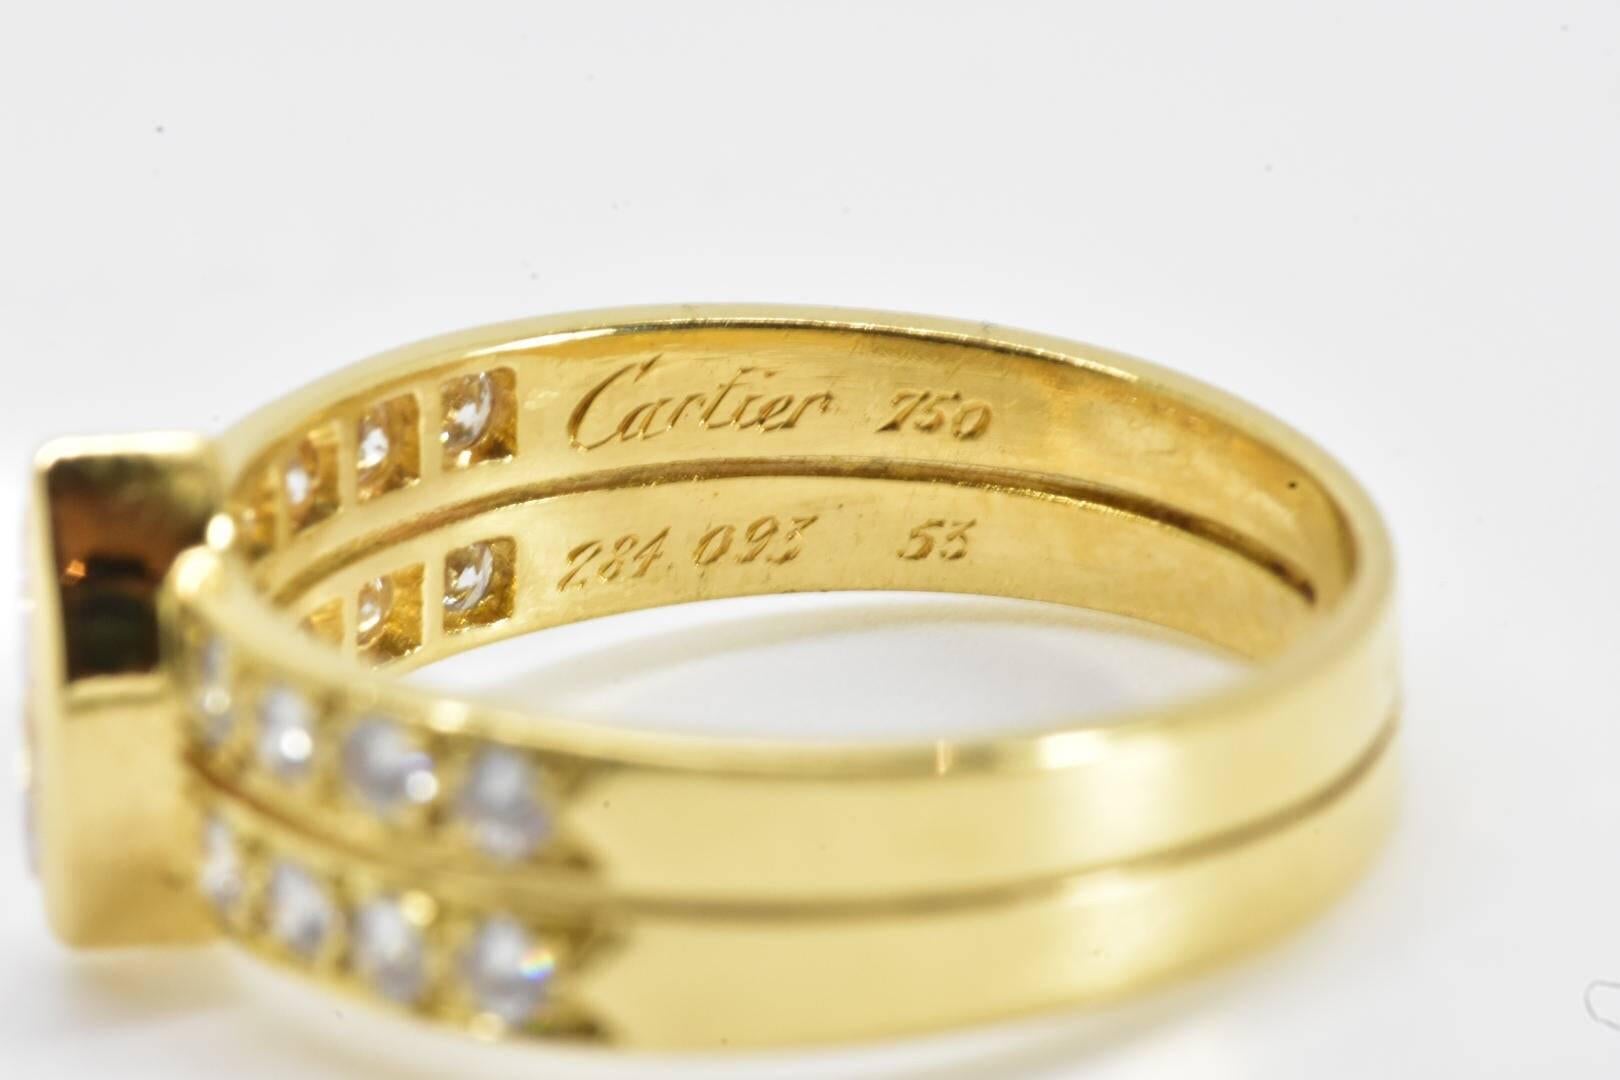 Cartier Diamond Ring 2